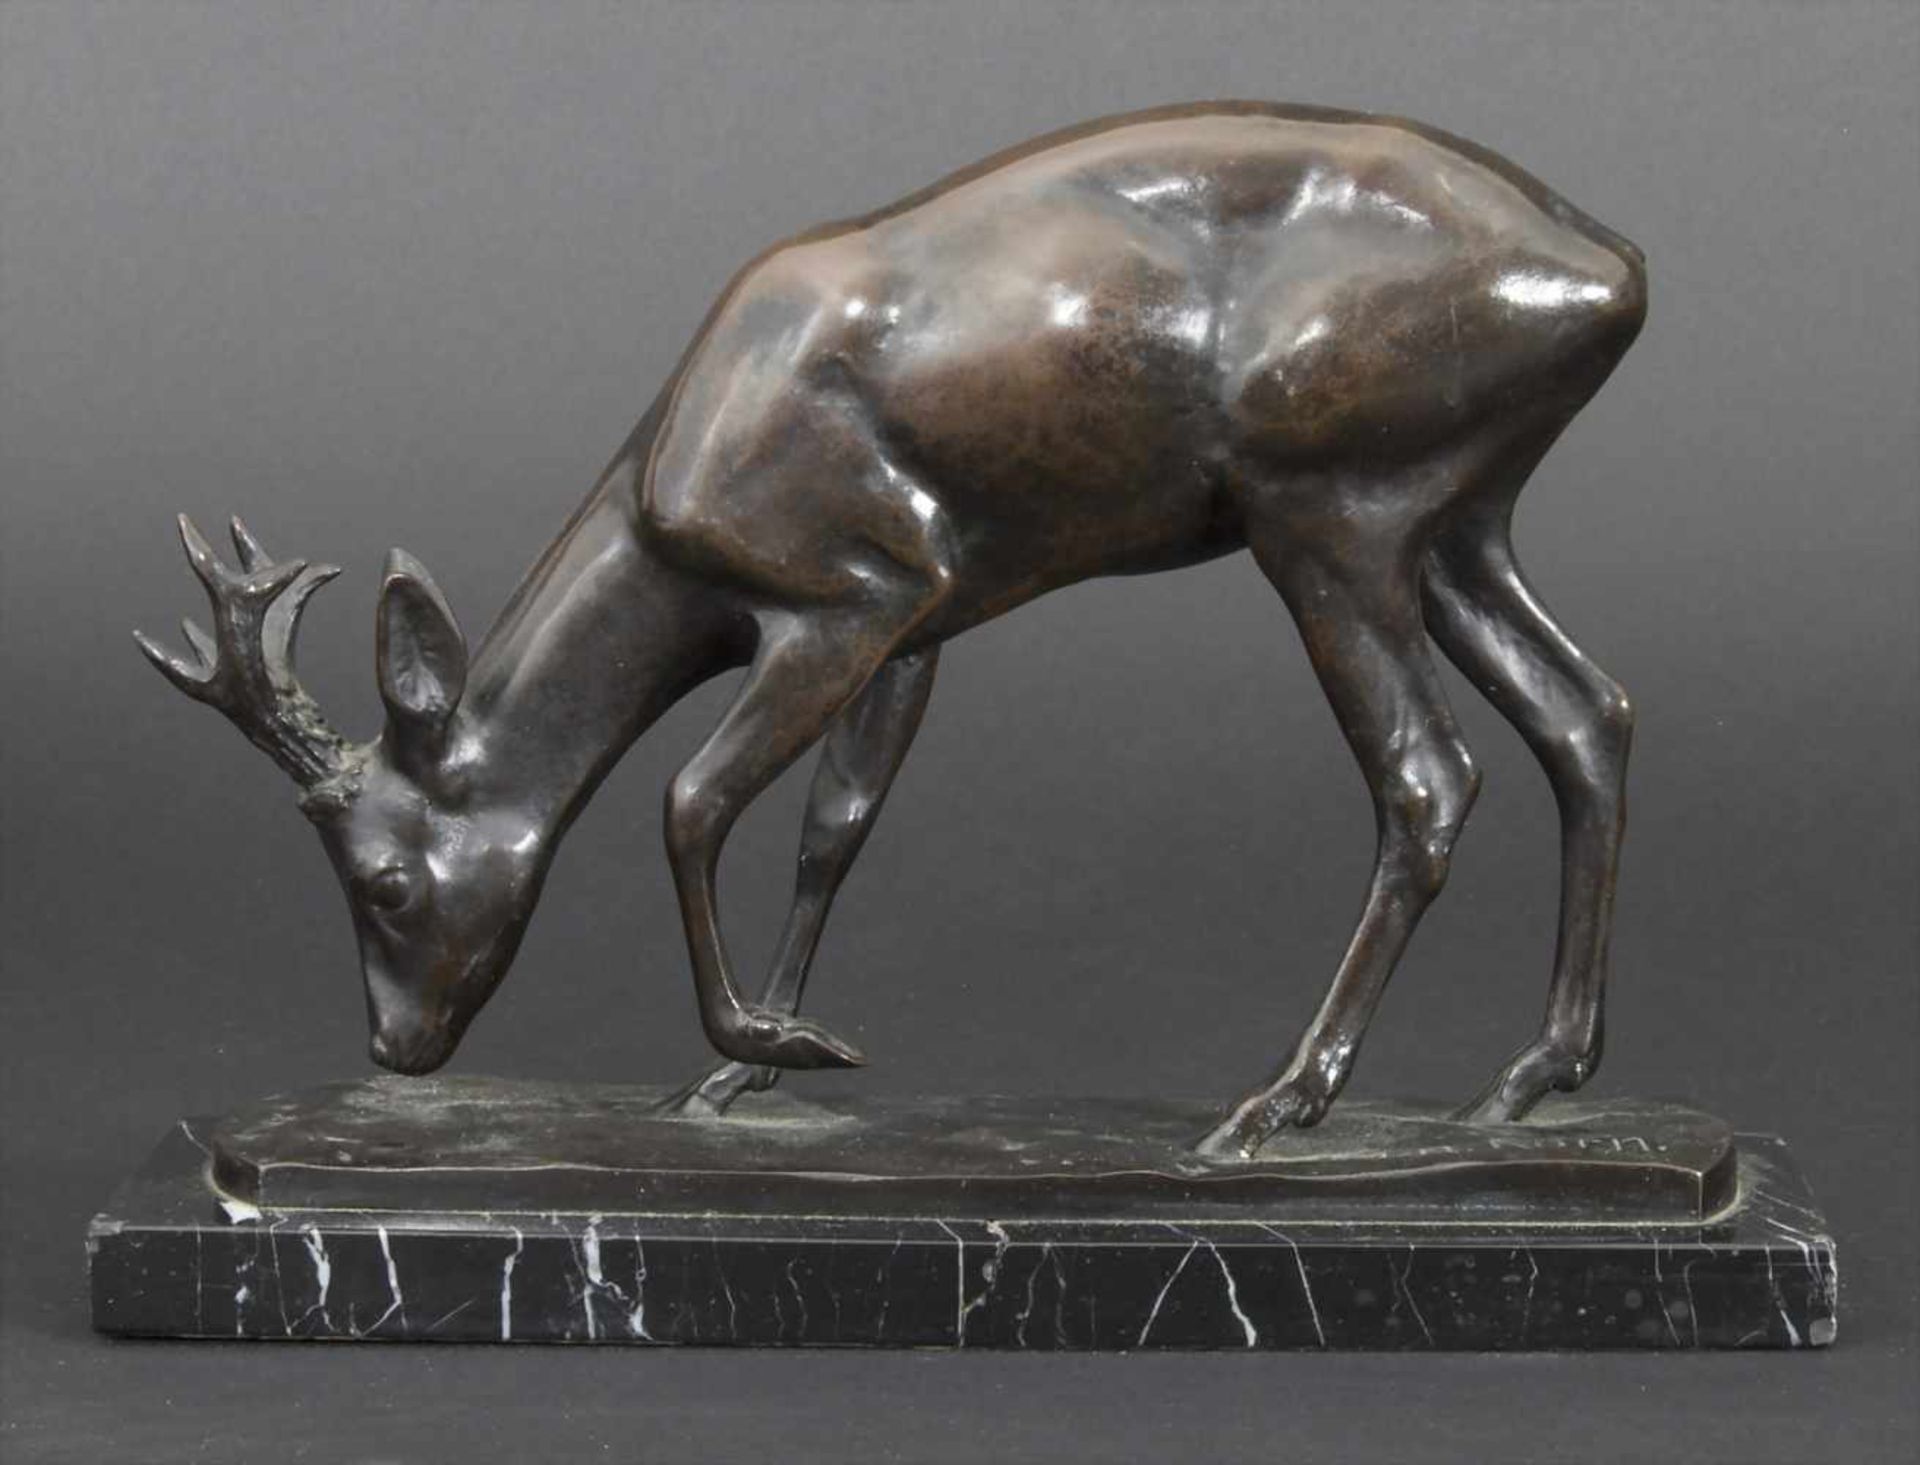 Johann Robert Korn (1873-1921), Tierfigur 'Hirsch' / An animal figure 'deer'Technik: Bronze,